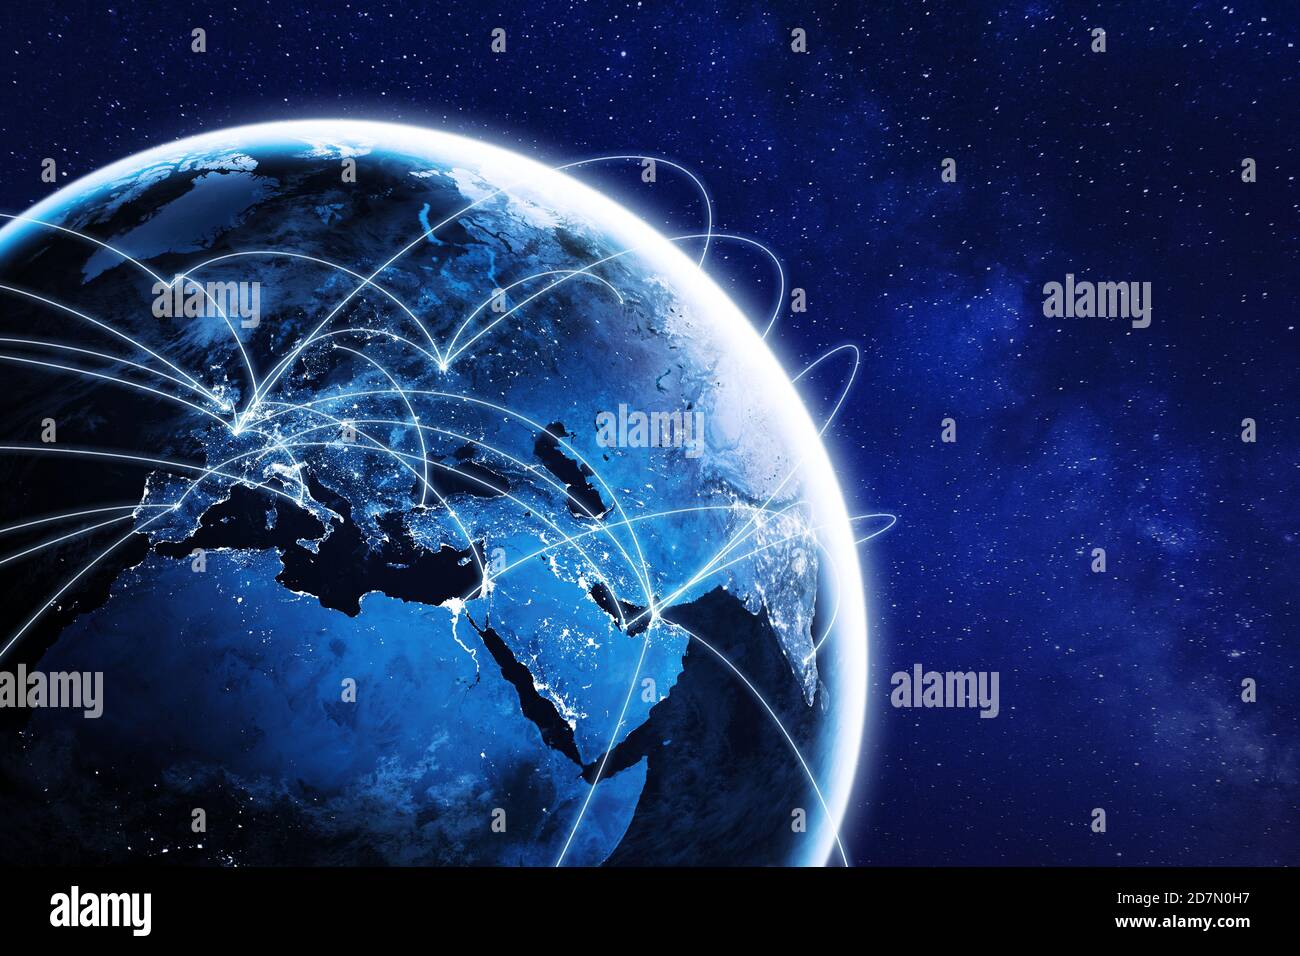 Connexions autour de la planète Terre vue de l'espace la nuit, villes connectées autour du monde par des lignes brillantes, des voyages internationaux ou des affaires mondiales Banque D'Images